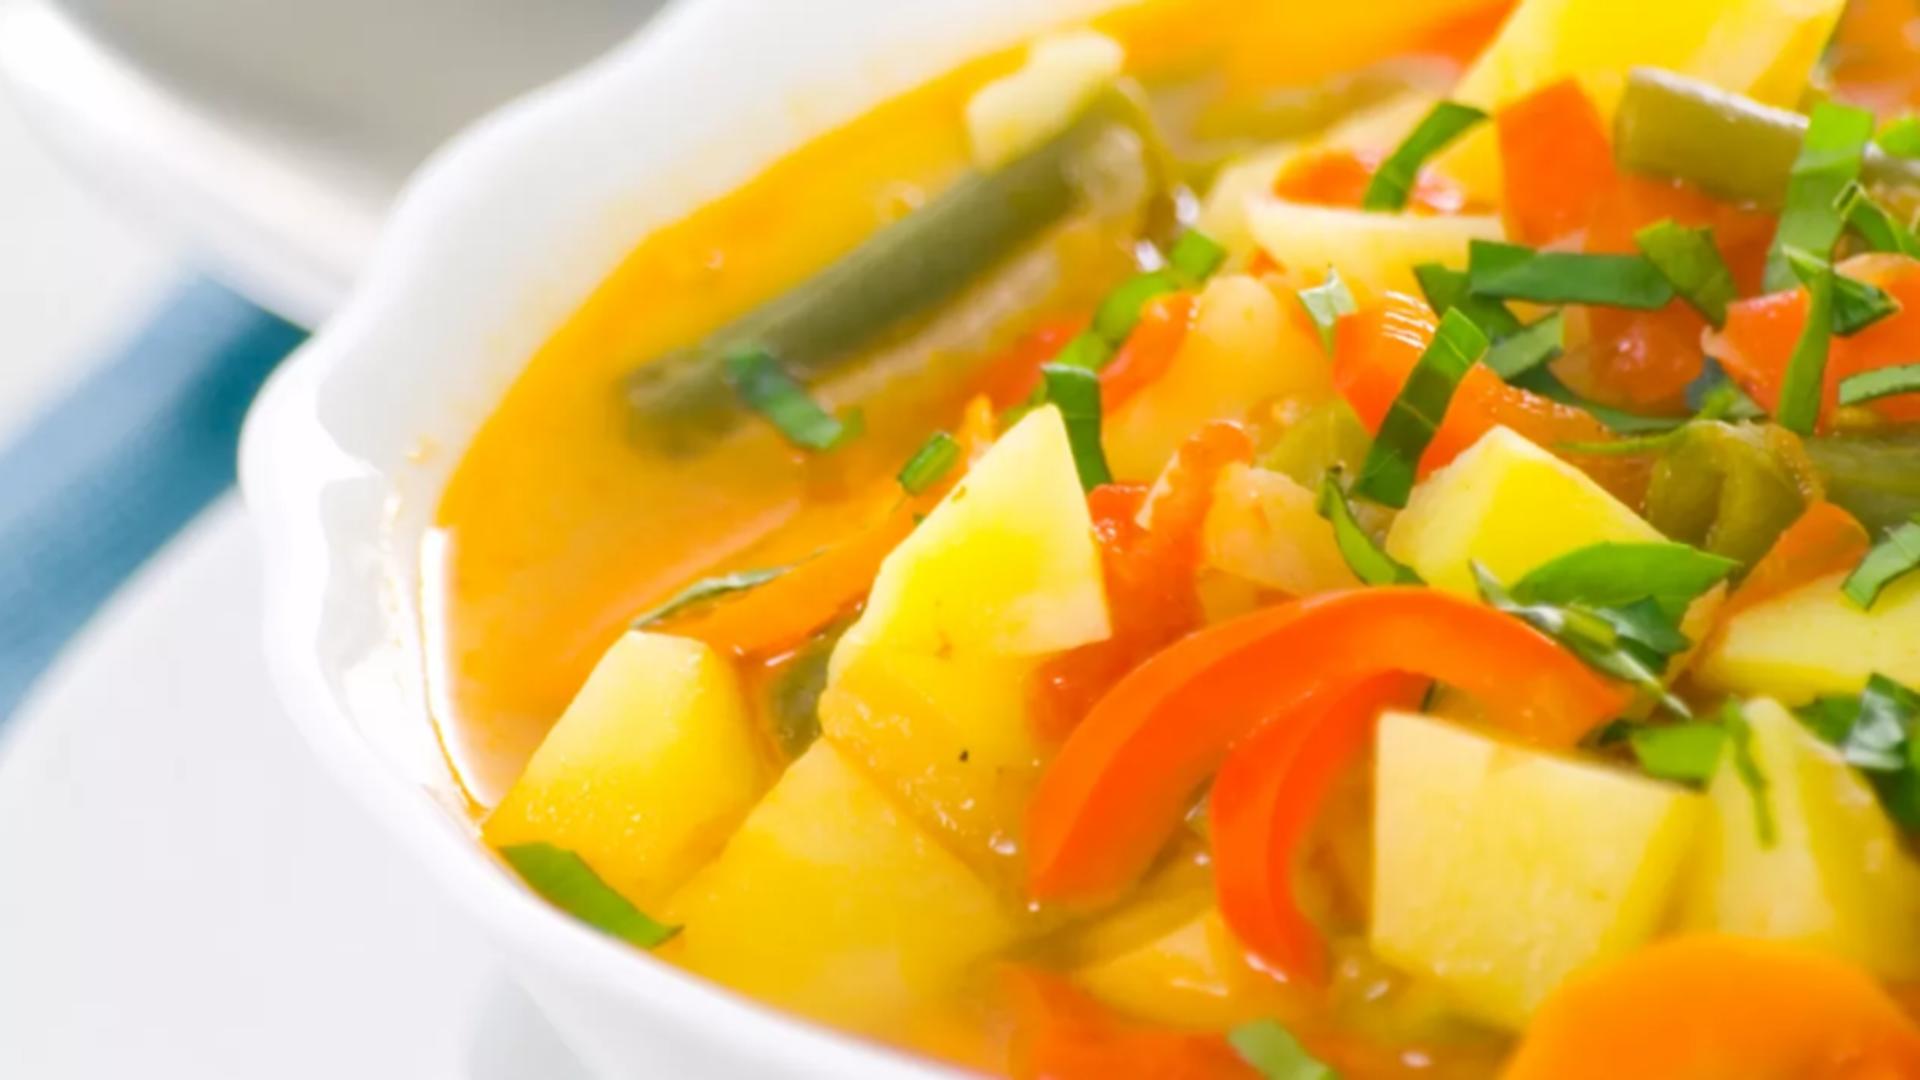 Ce putem face cu legumele rămase din supă, în loc să le aruncăm. 3 rețete pentru preparate delicioase